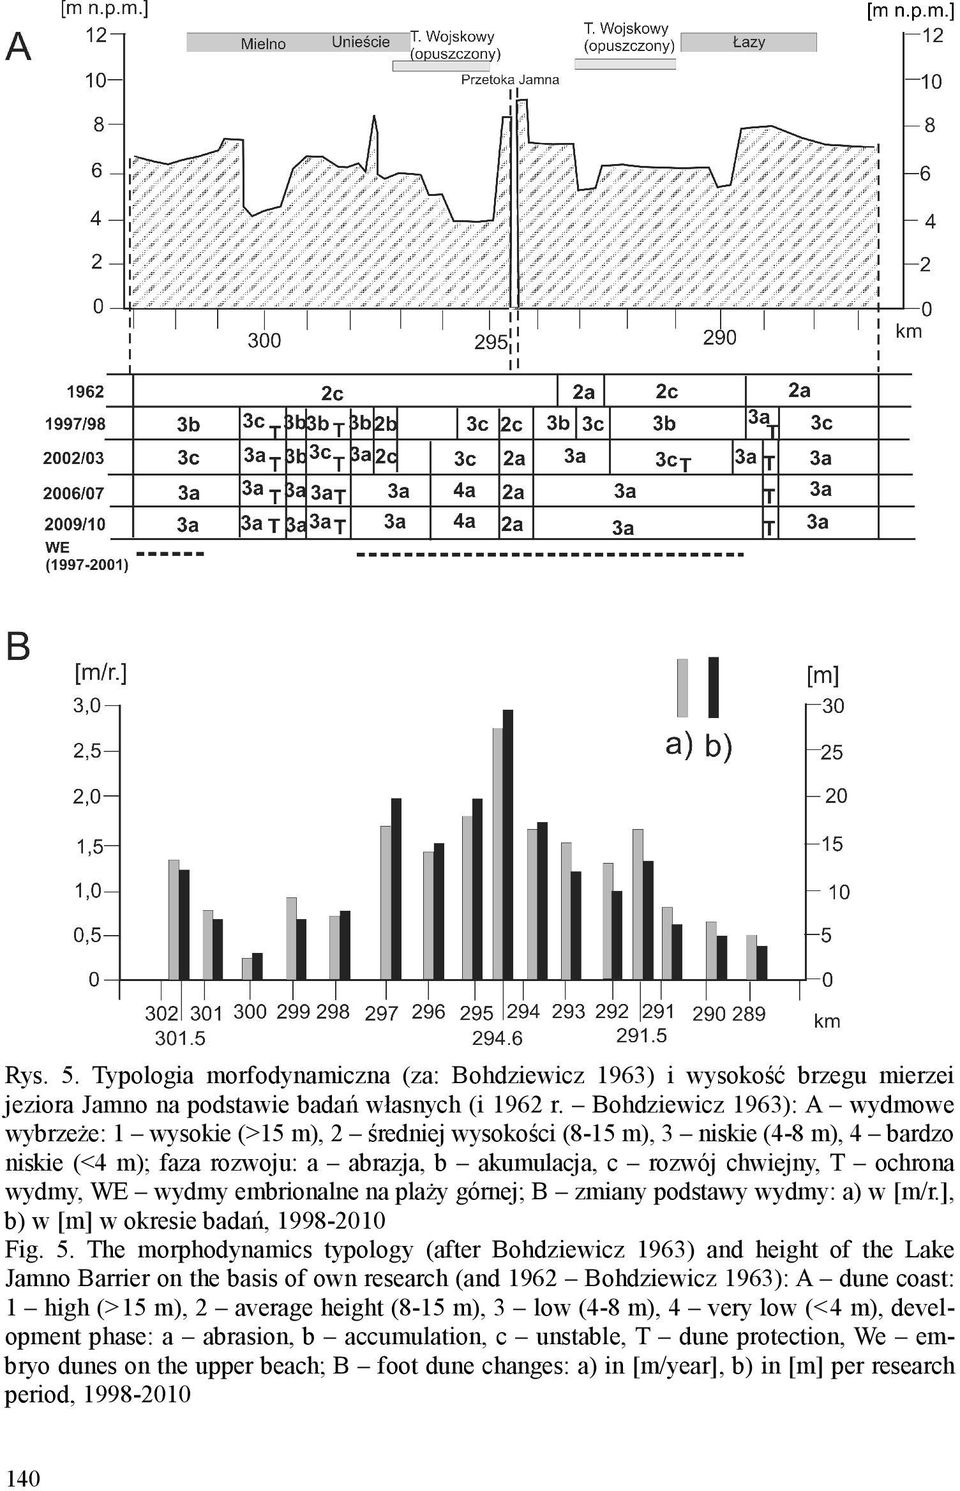 wydmy, WE wydmy embrionalne na plaży górnej; B zmiany podstawy wydmy: a) w [m/r.], b) w [m] w okresie badań, 1998-2010 Fig. 5.